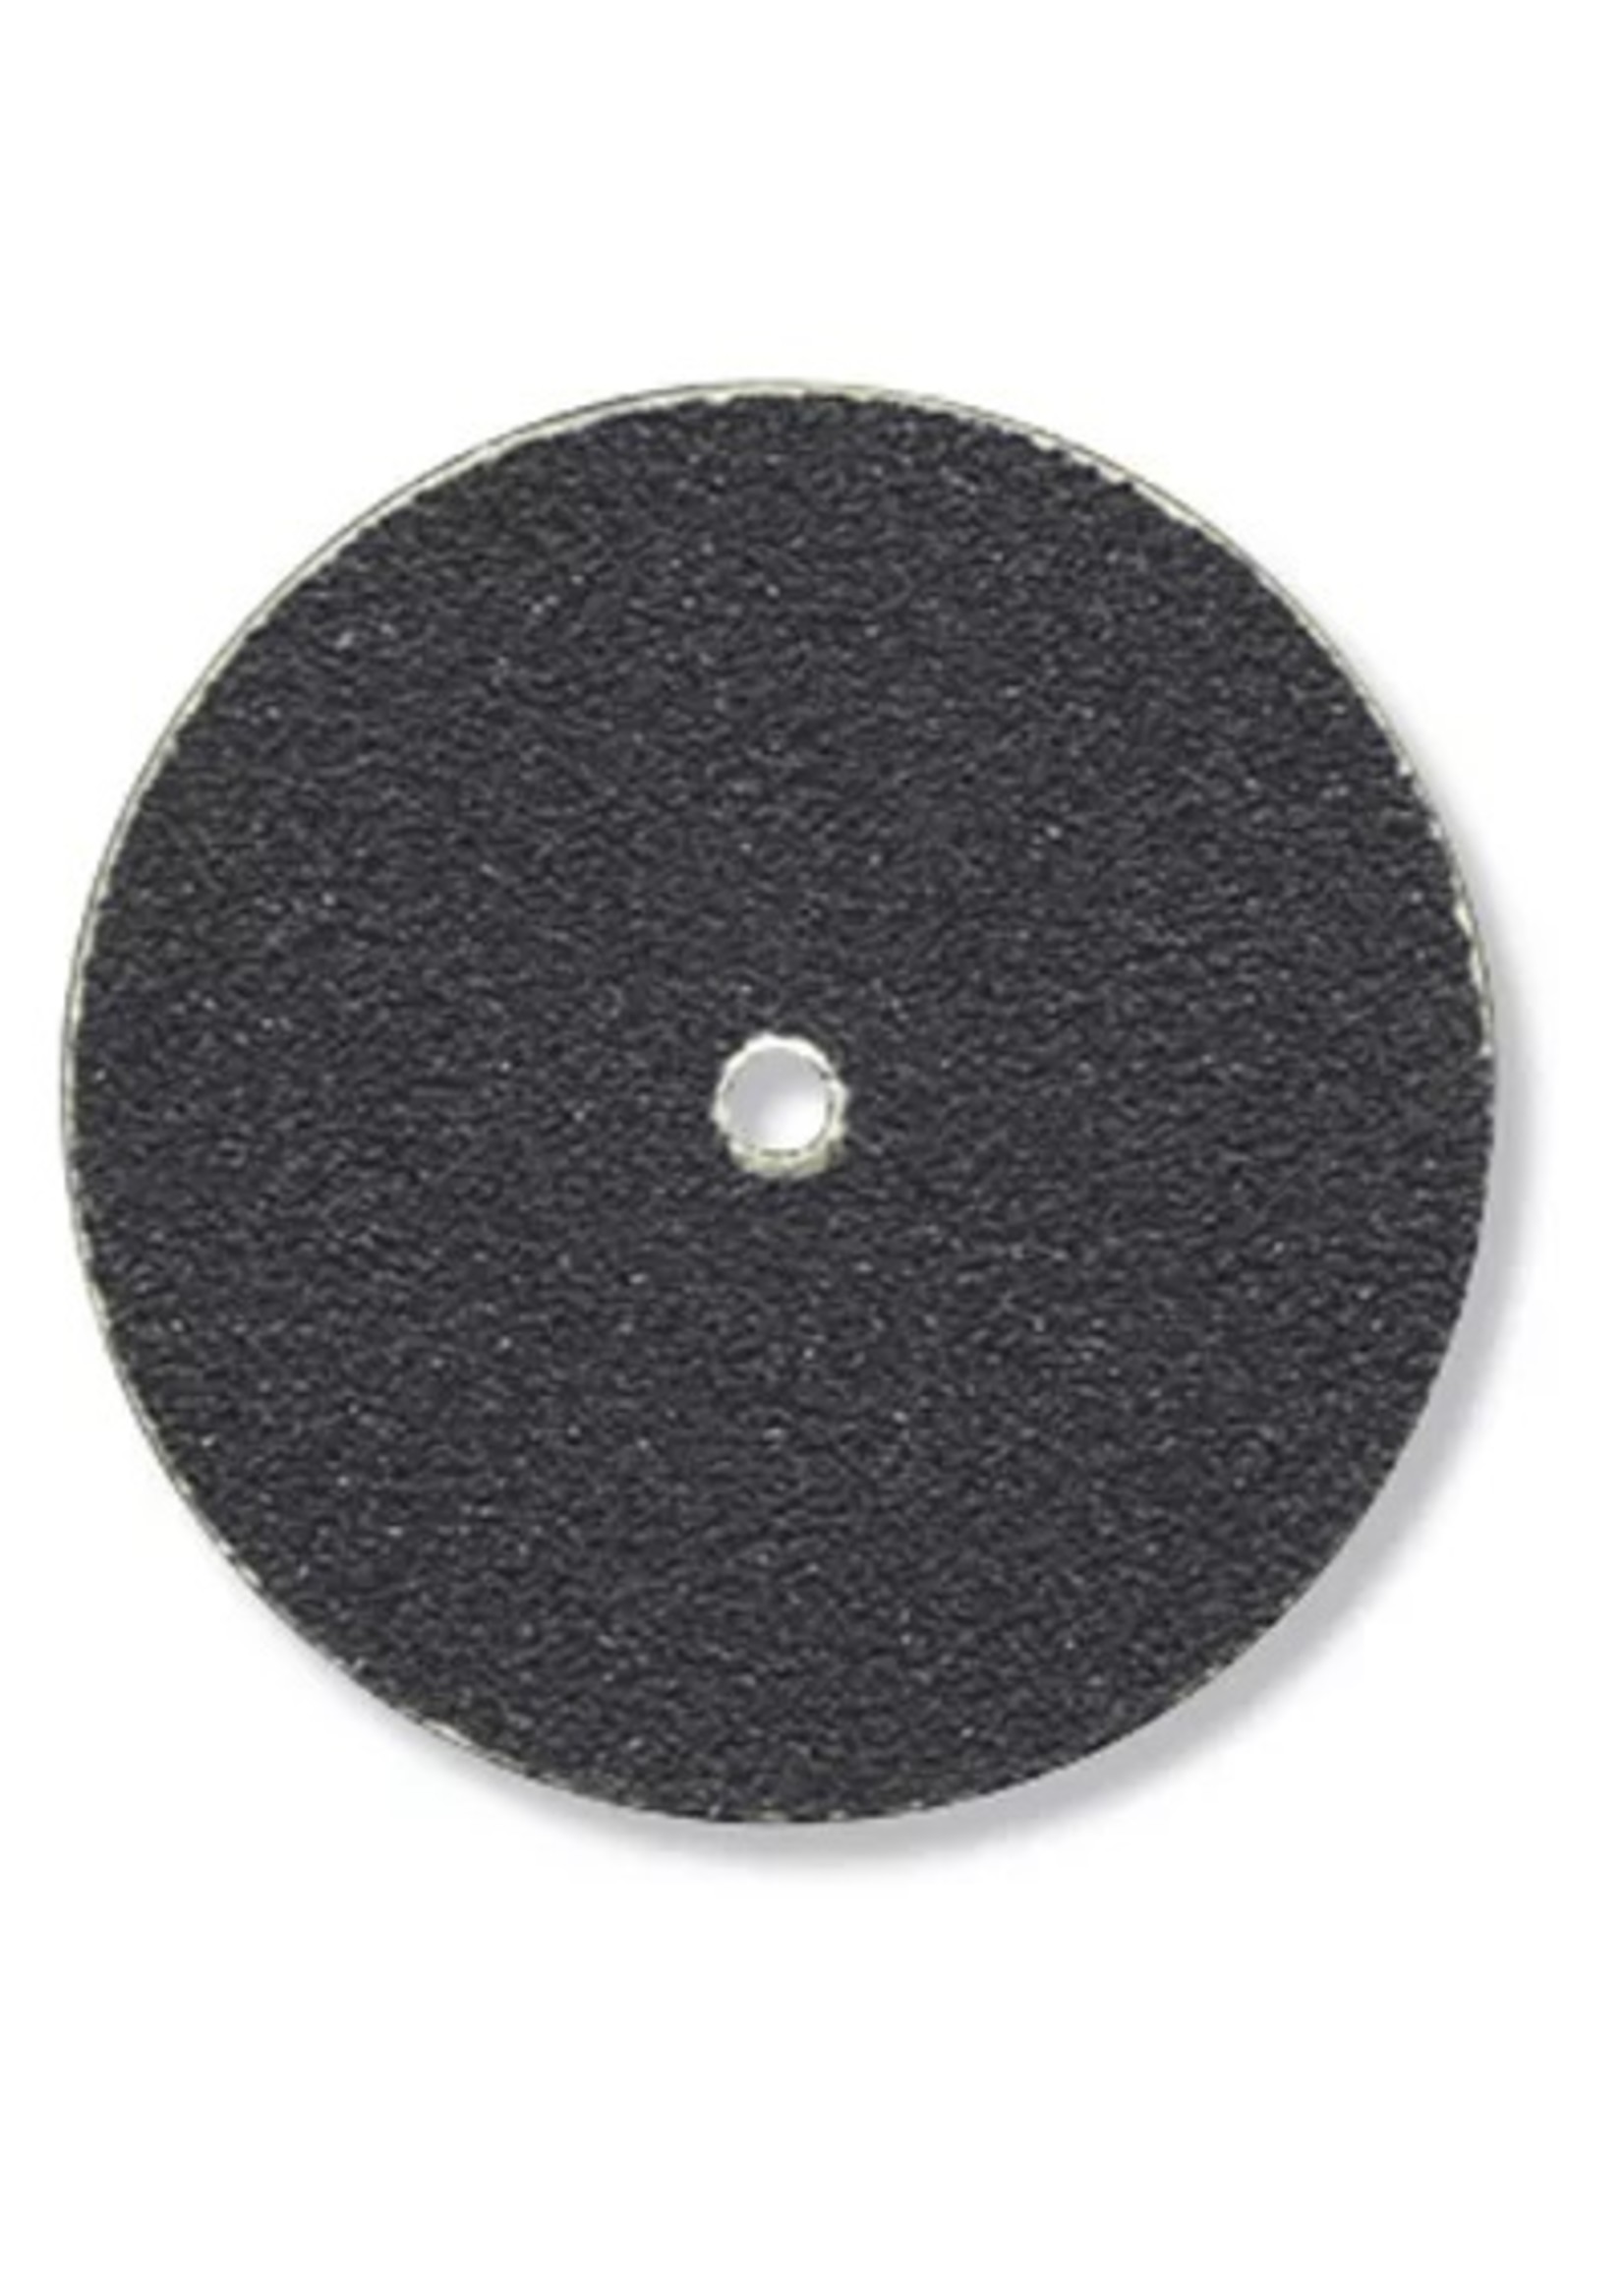 Dremel 412 - 220 Grit Sanding Discs (36)